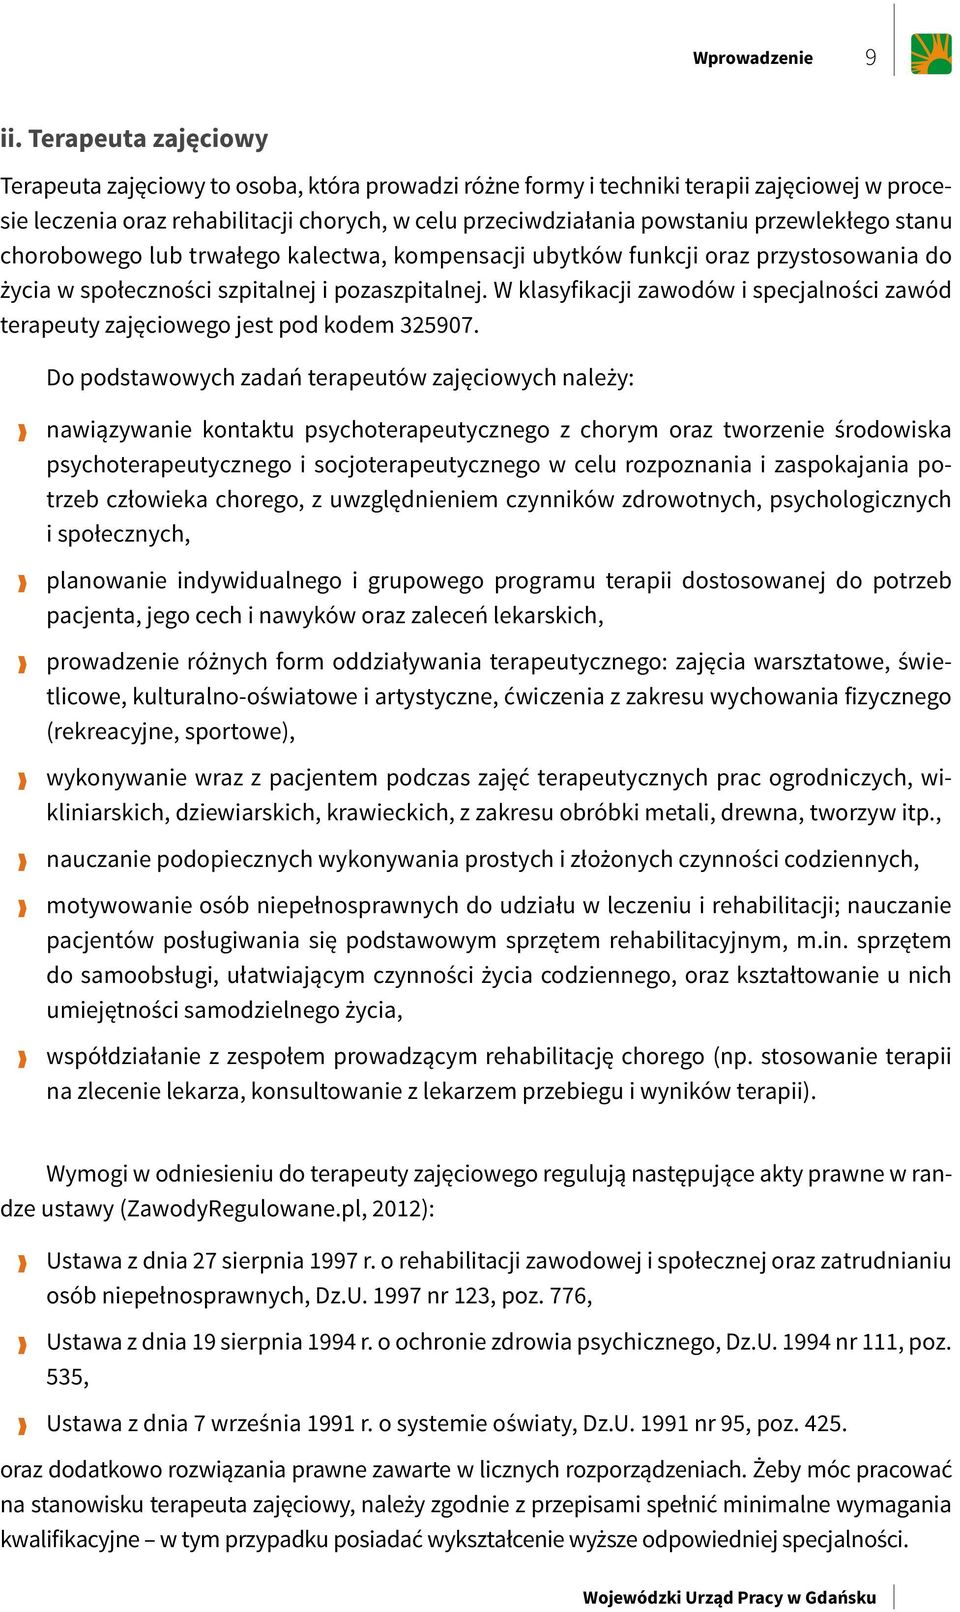 Wojewódzki Urząd Pracy w Gdańsku. Profil stanowiskowy terapeuty zawodowego  - PDF Free Download